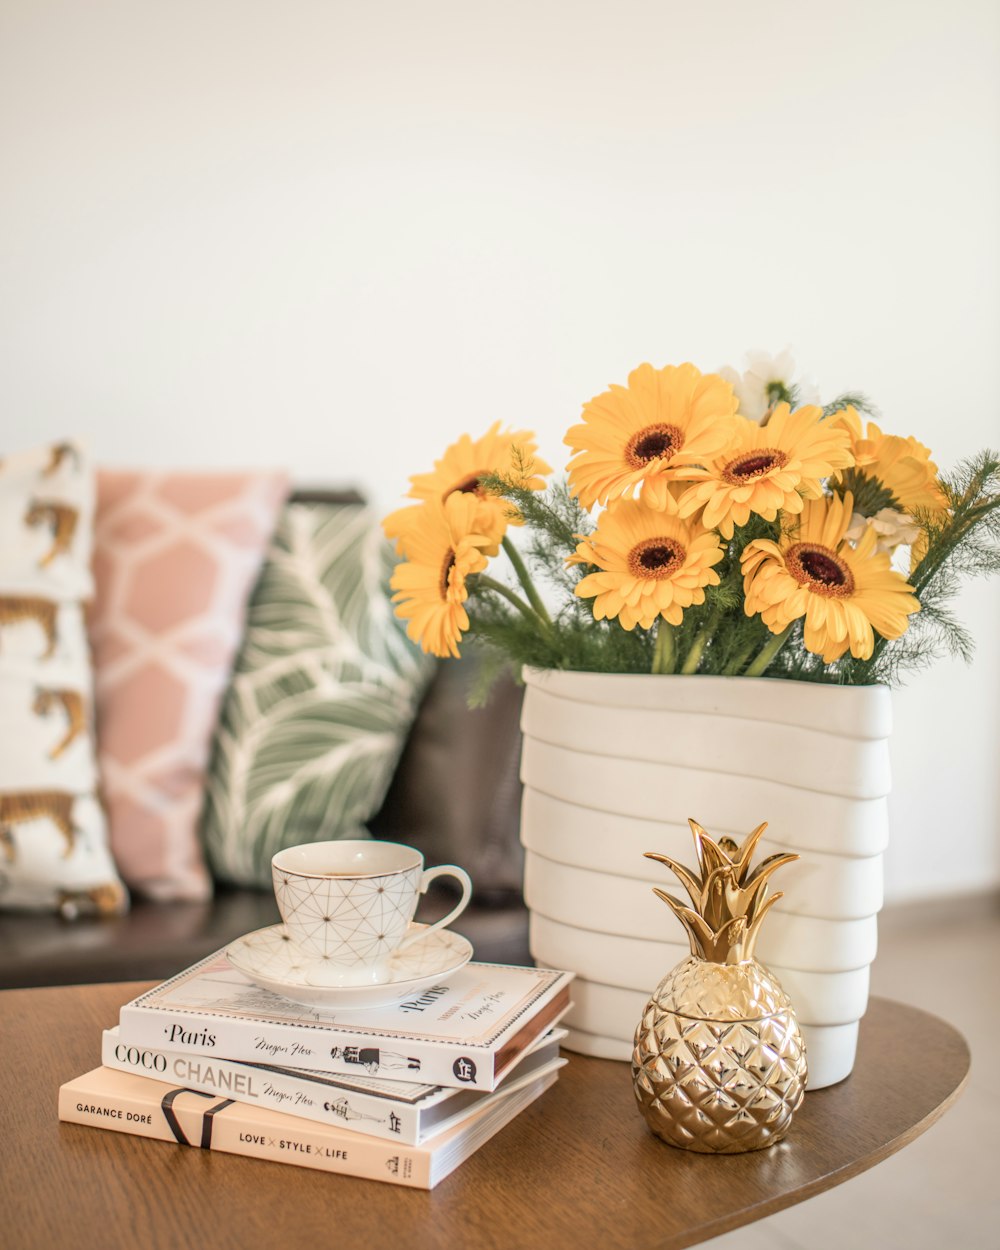 fiore giallo su vaso in ceramica bianca